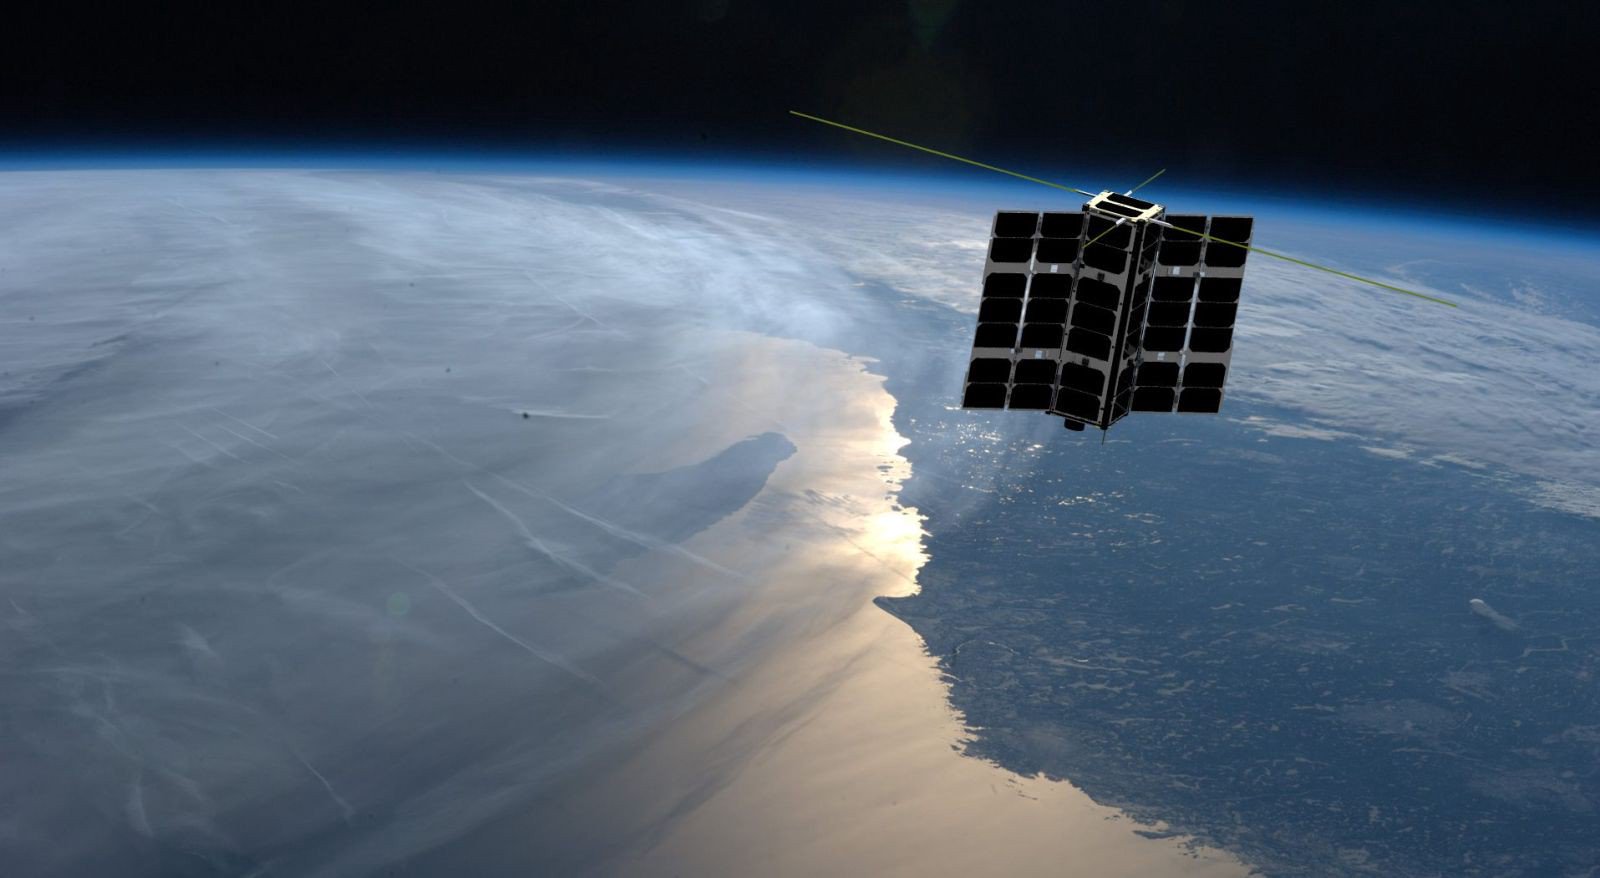 Dois satélites de quase encontrou. Como eles conseguiram evitar um desastre?